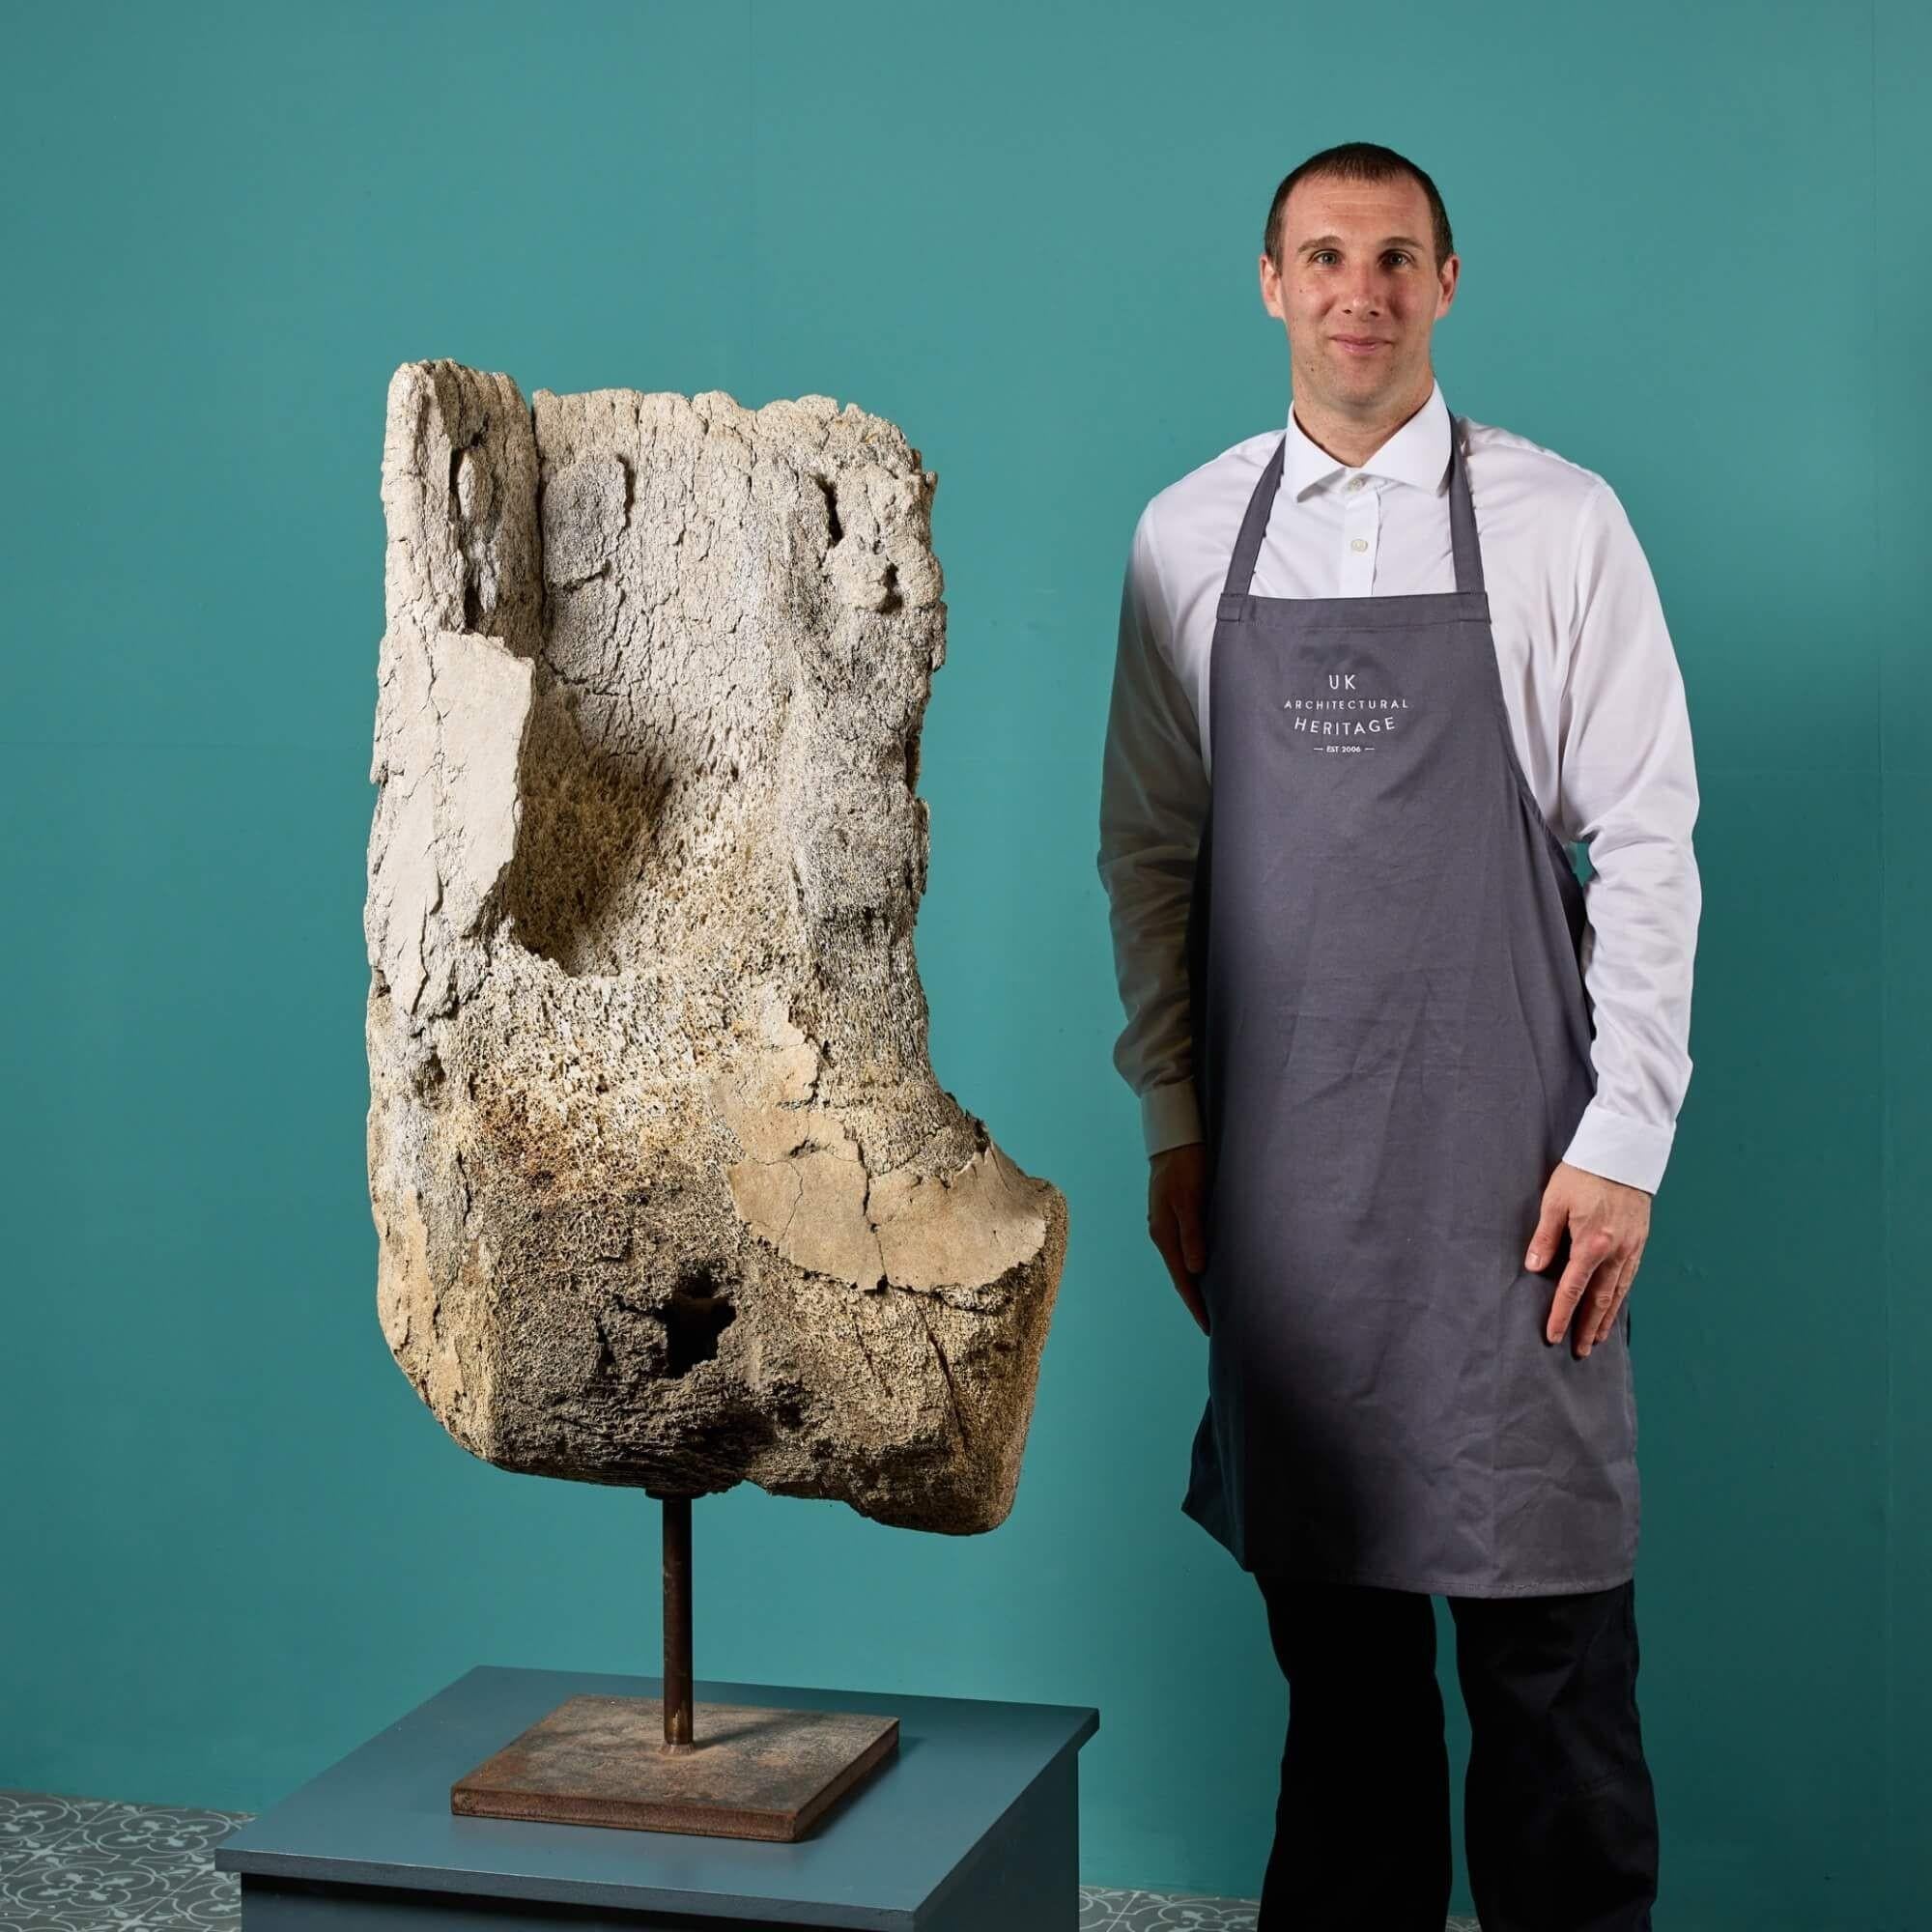 Mit einer Höhe von über 120 cm ist dieser seltene prähistorische, versteinerte Walknochen ein faszinierendes skulpturales Artefakt für ein Interieur oder ein Wohnmuseum. Er wurde angeblich in Beccles, Suffolk, Großbritannien, ausgegraben und hat